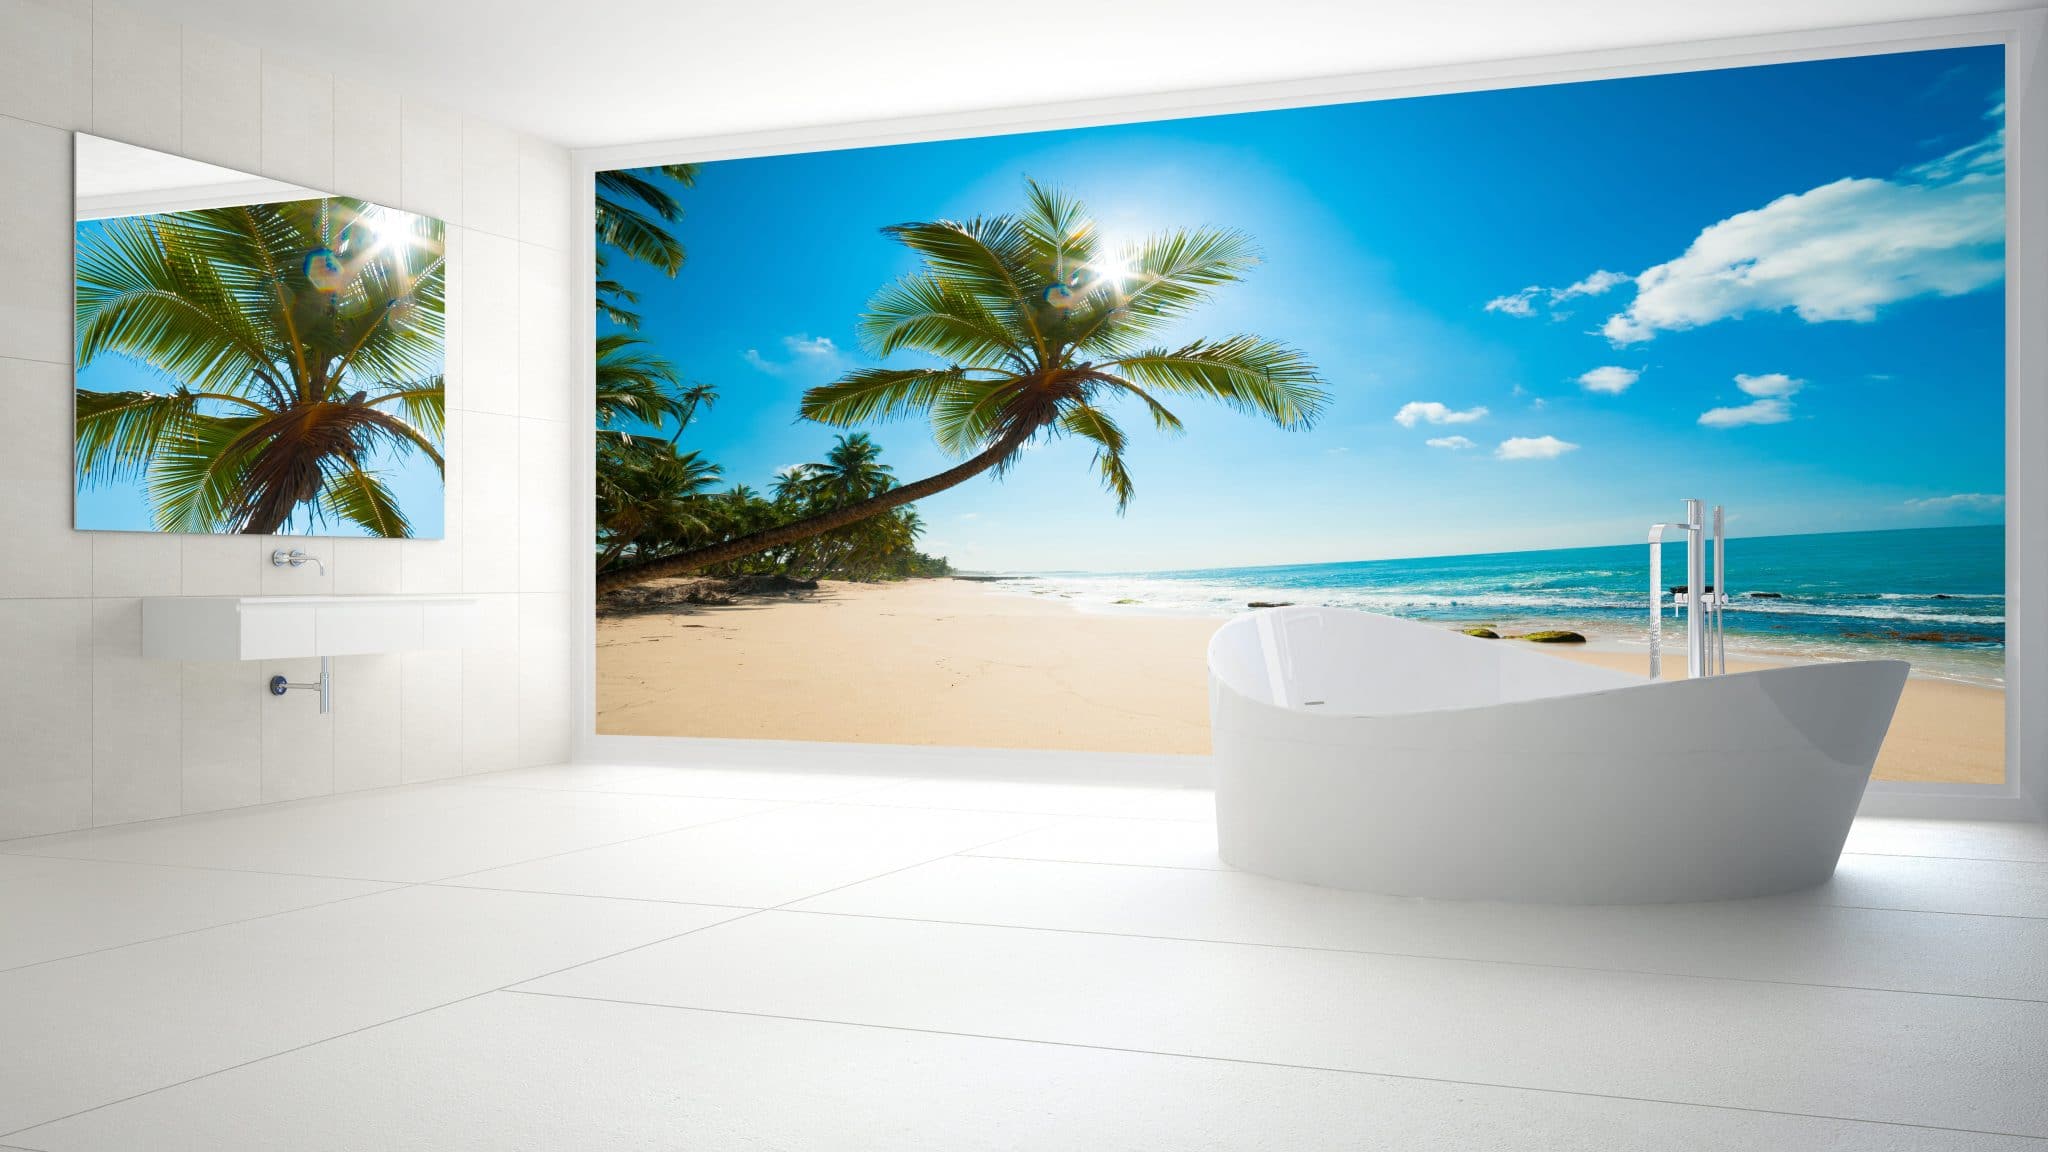 Coastal Palm Leaf Wallpaper Bathroom Renovation Reveal | Small bathroom  wallpaper, Diy bathroom decor, Bathroom wallpaper